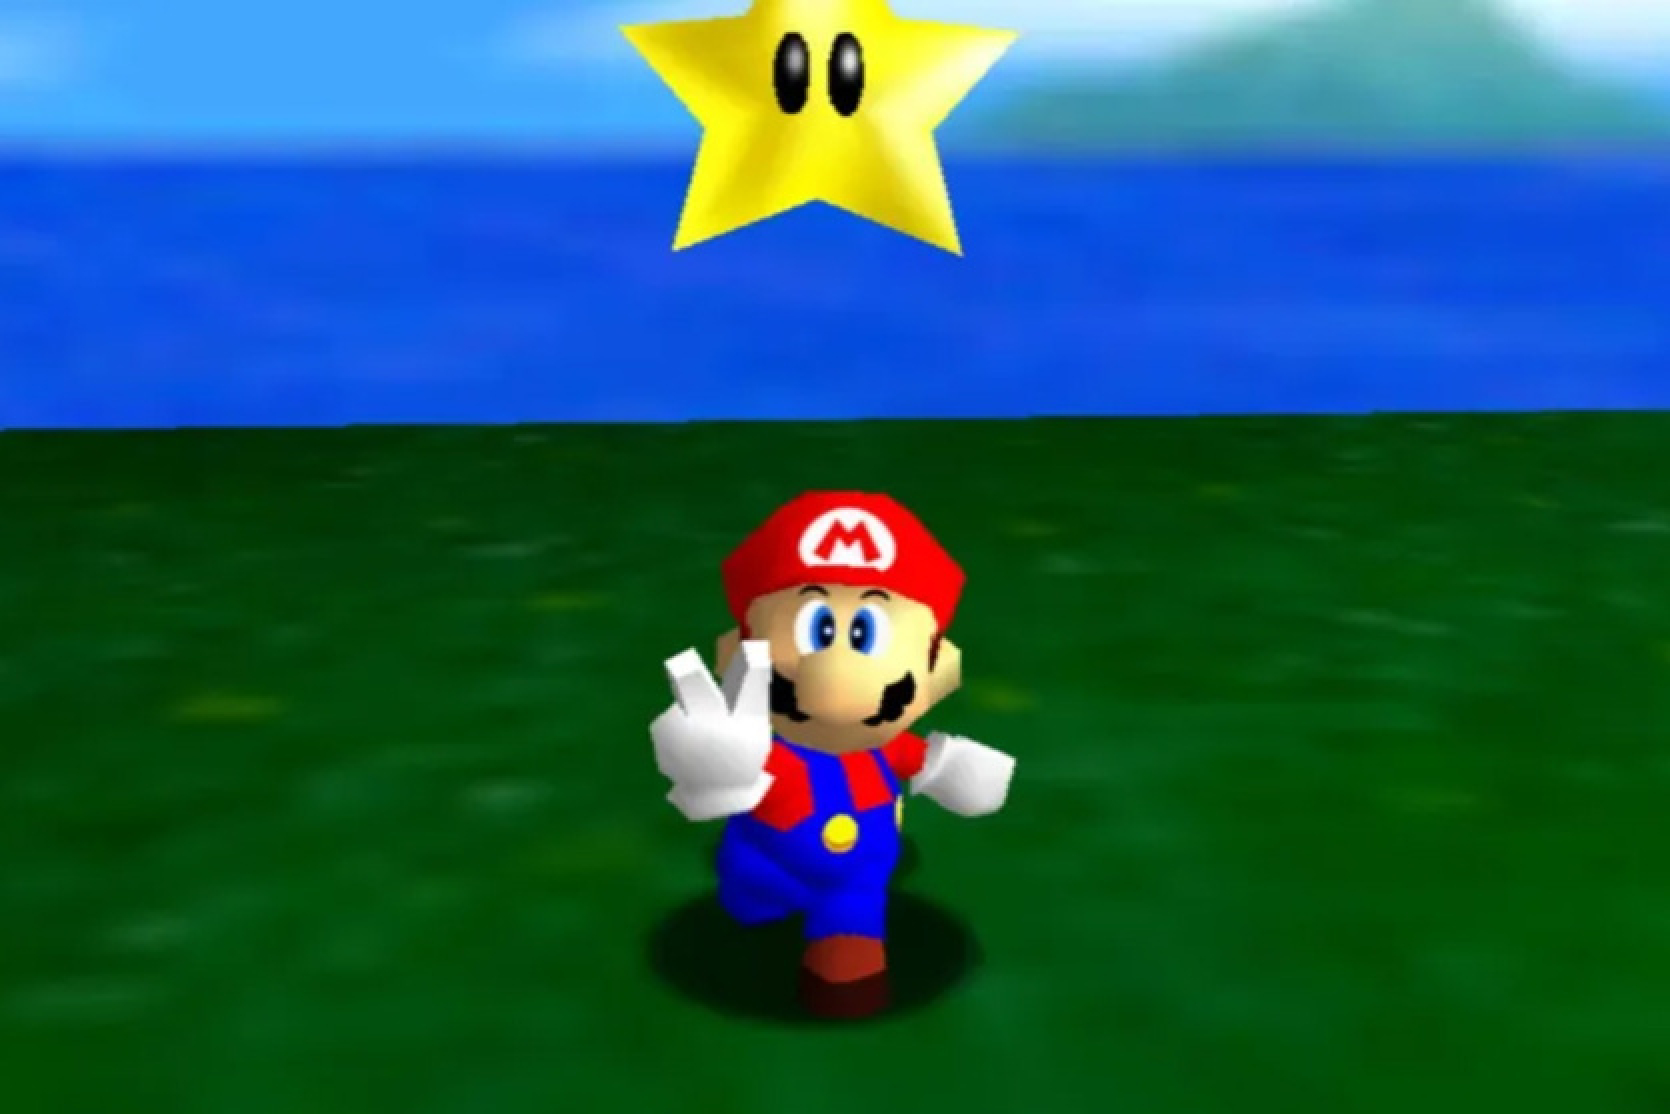 Super Mario 64 pagāja bez A pogas nospiešanas, lai lēktu - tas tika uzskatīts par pilnīgi neiespējamu.